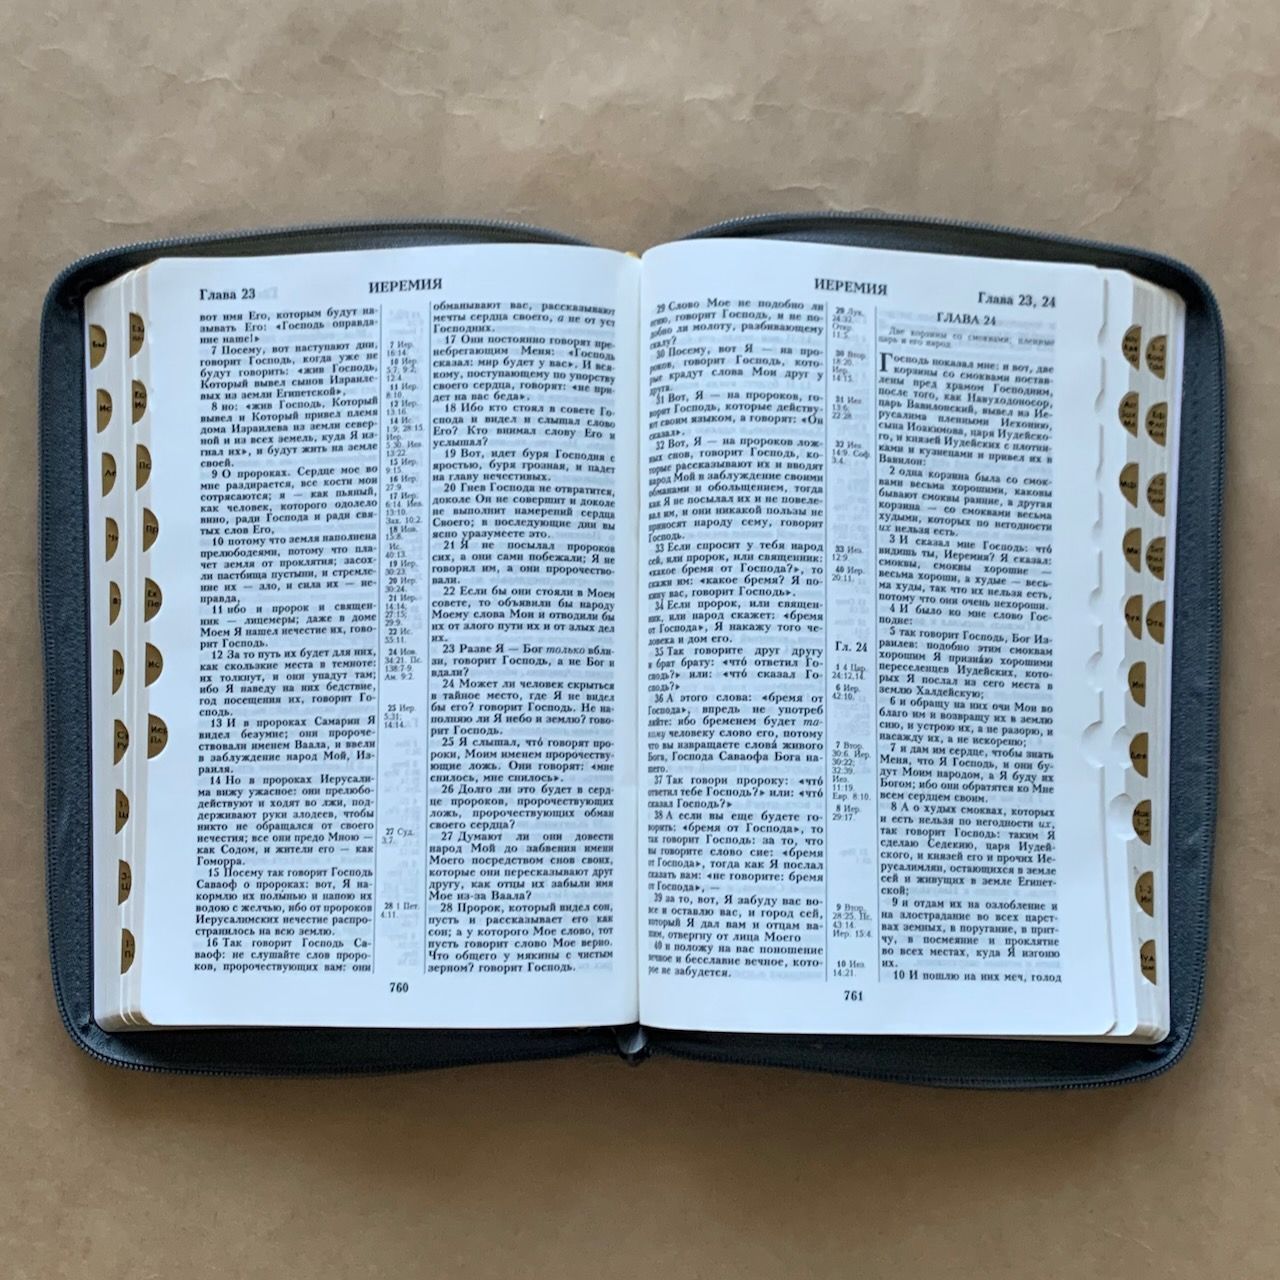 Библия 076zti код G3, дизайн "орел" термо печать, переплет из искусственной кожи на молнии с индексами, цвет темно-серый мрамор матовый, размер 180x243 мм